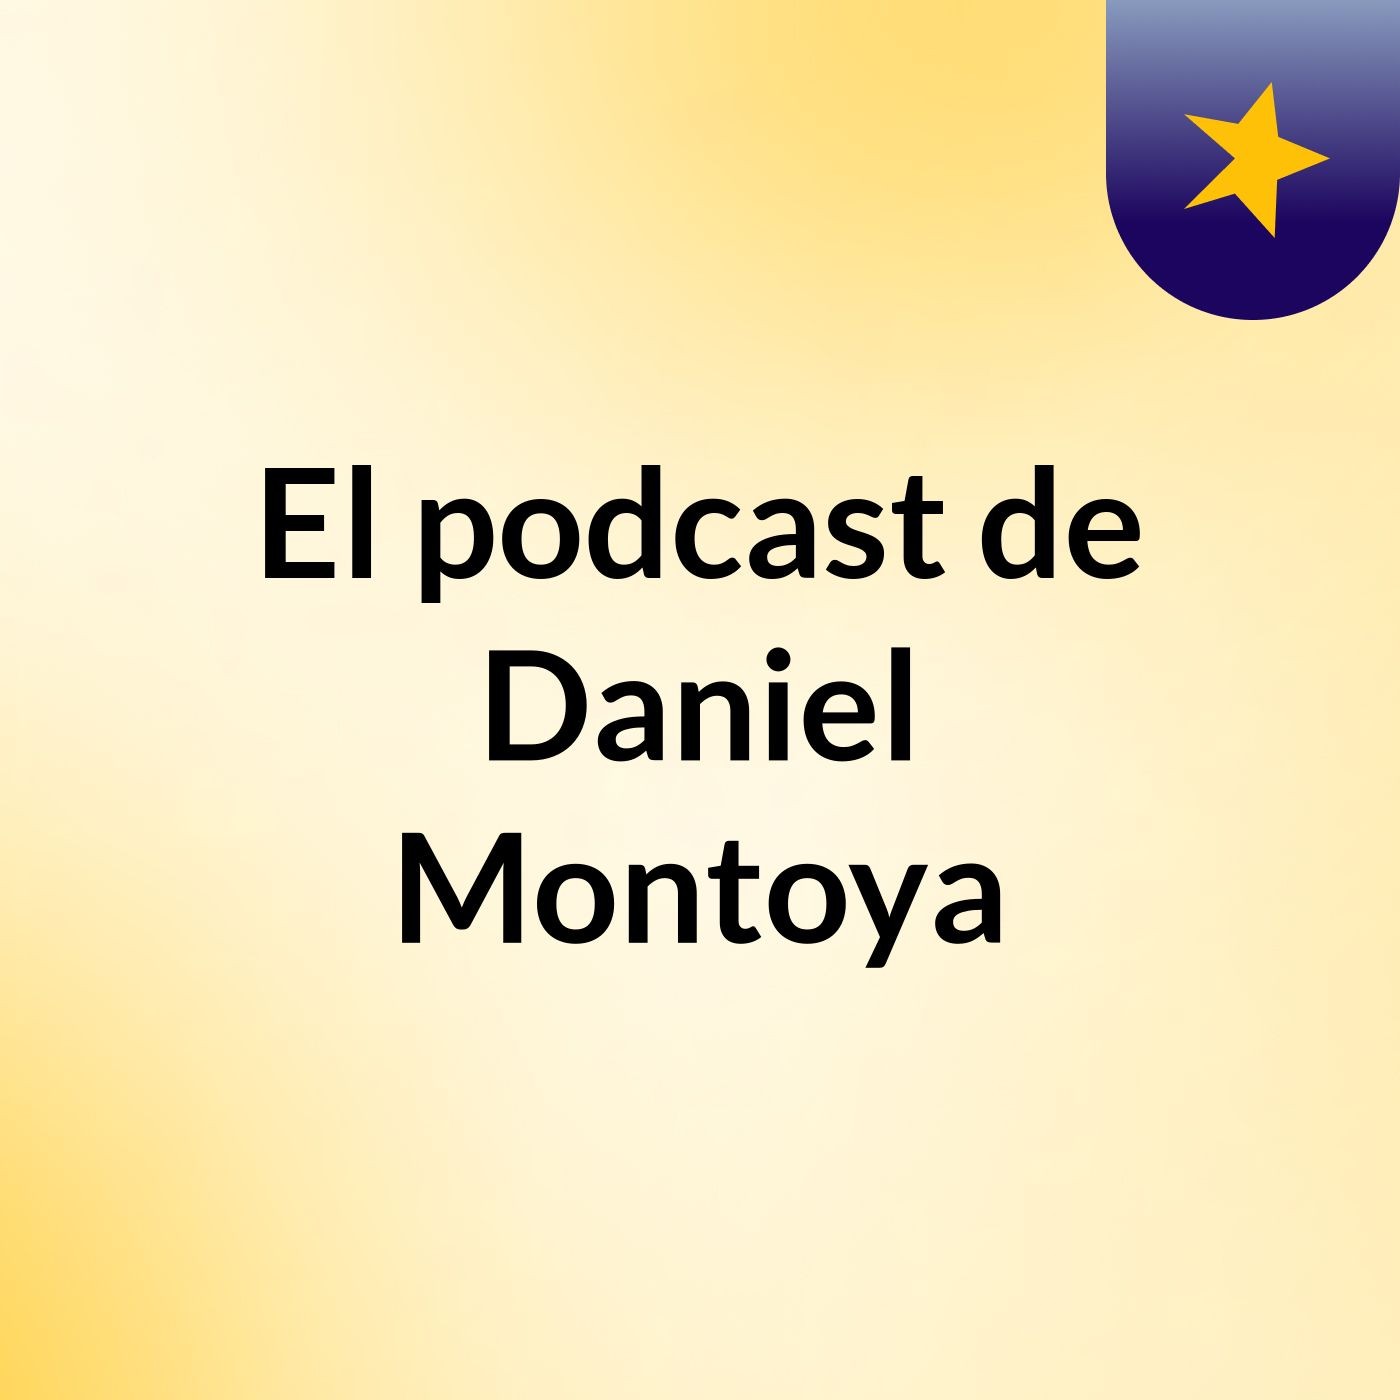 El podcast de Daniel Montoya